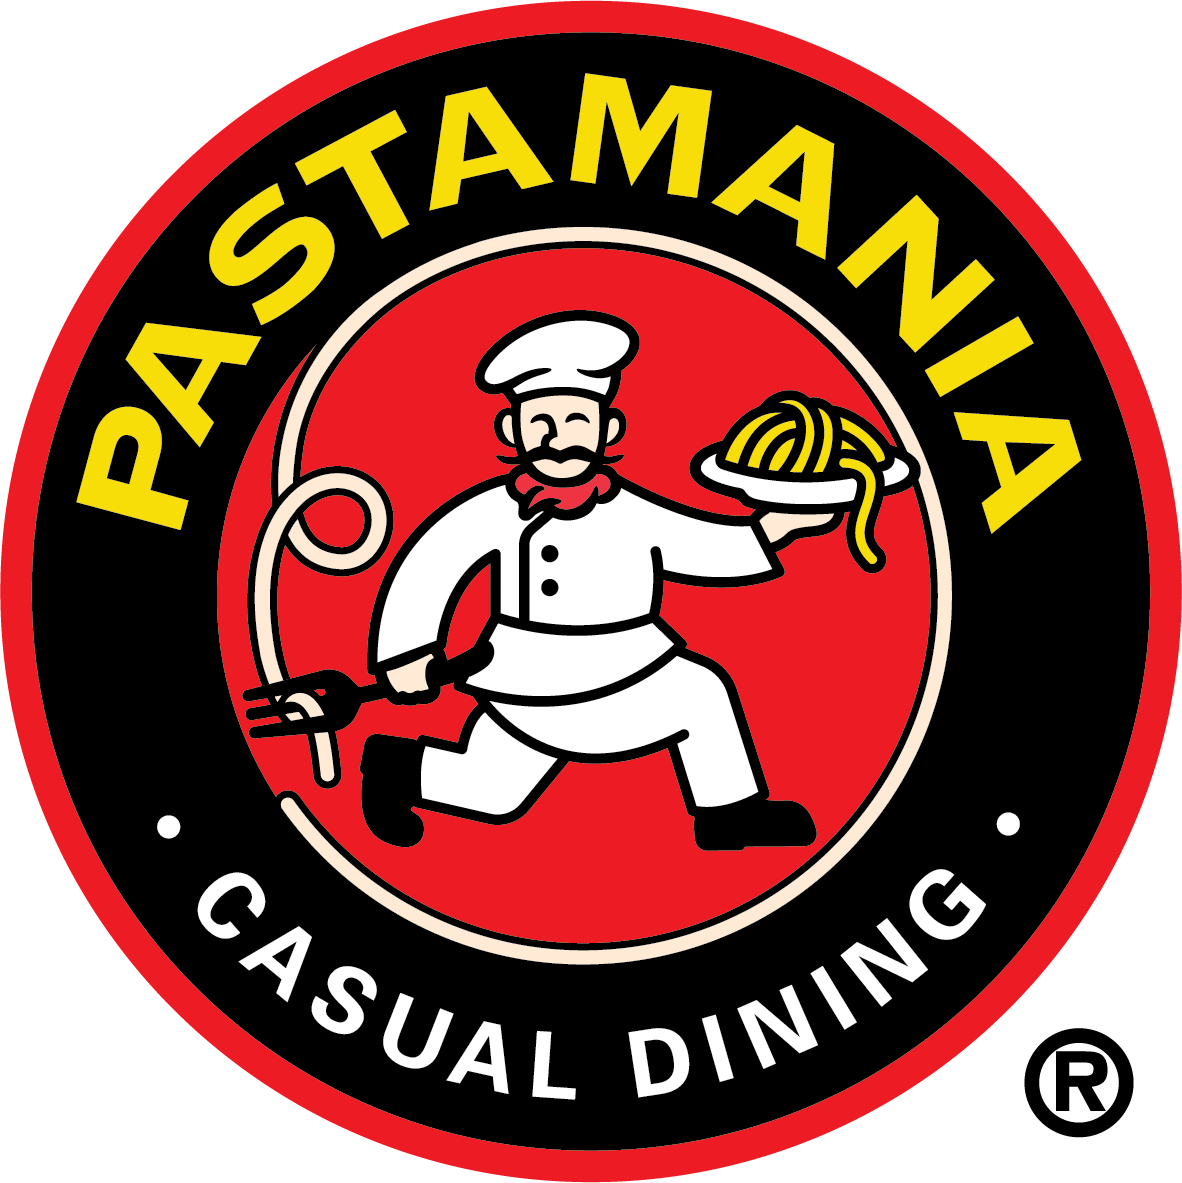 PastaMania Singapore